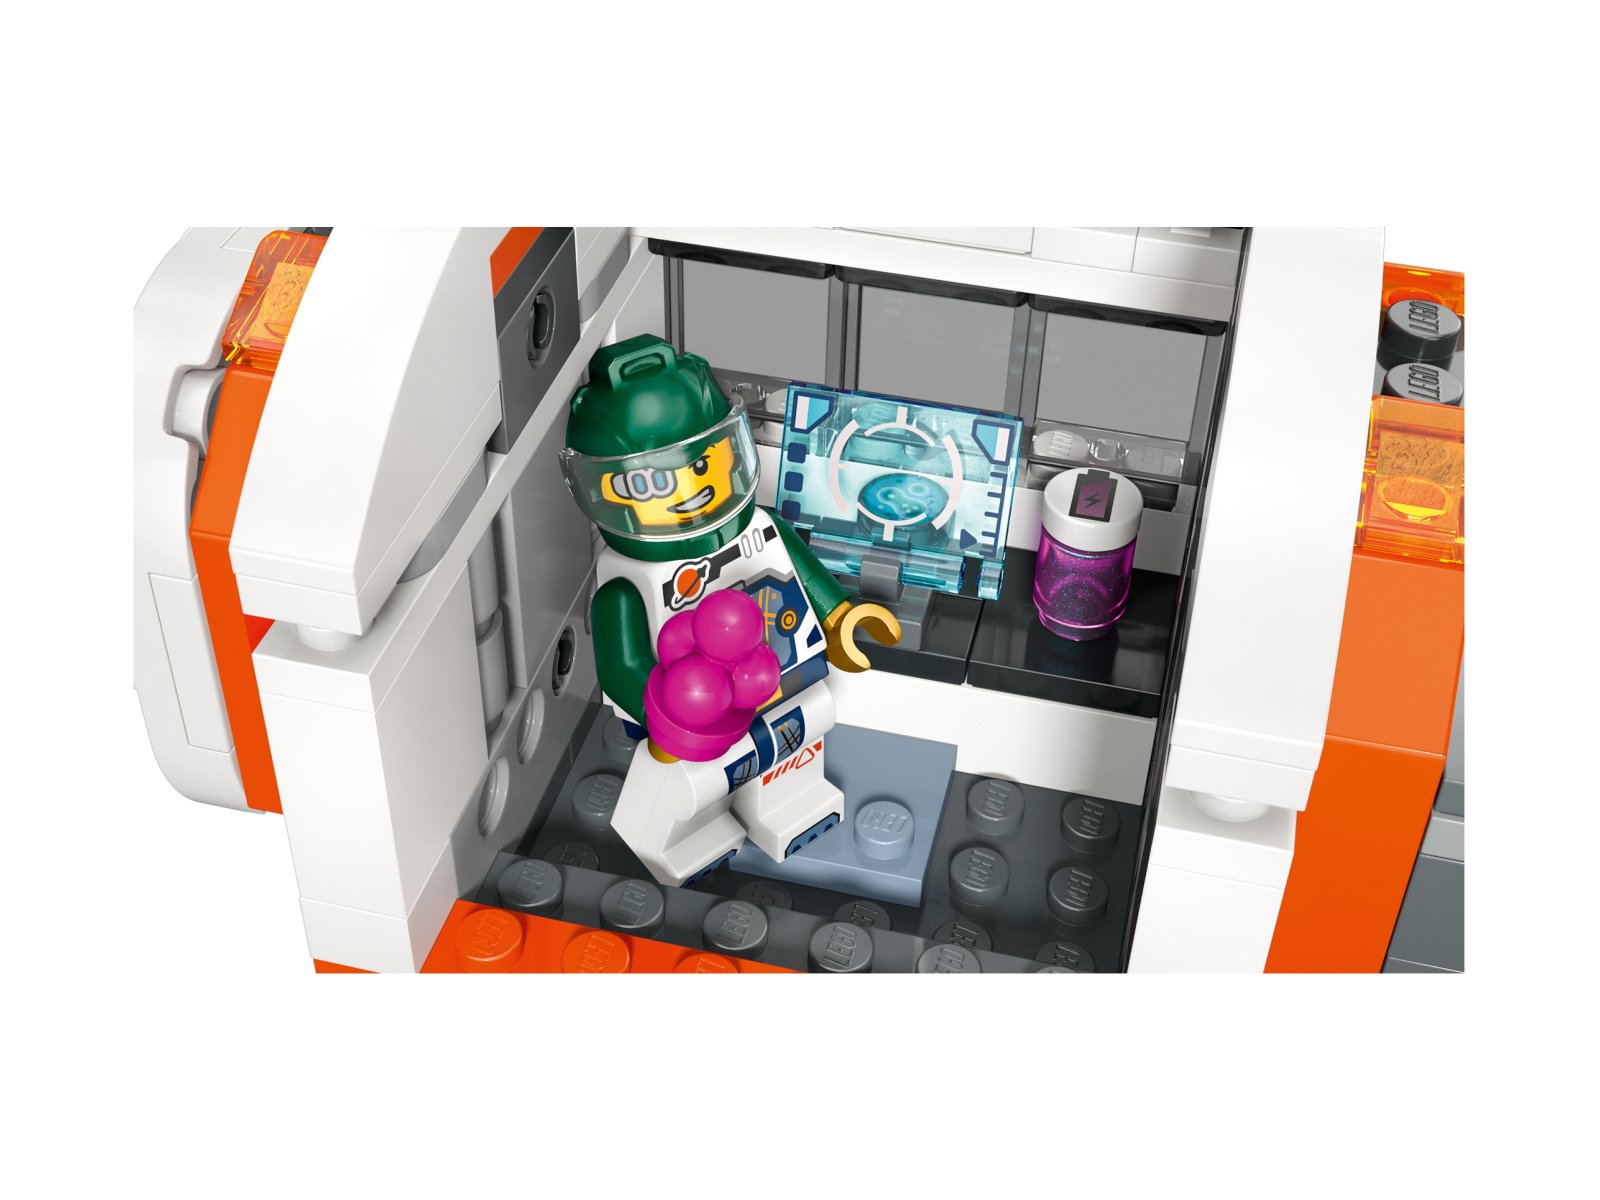 LEGO 60433 City Modułowa stacja kosmiczna